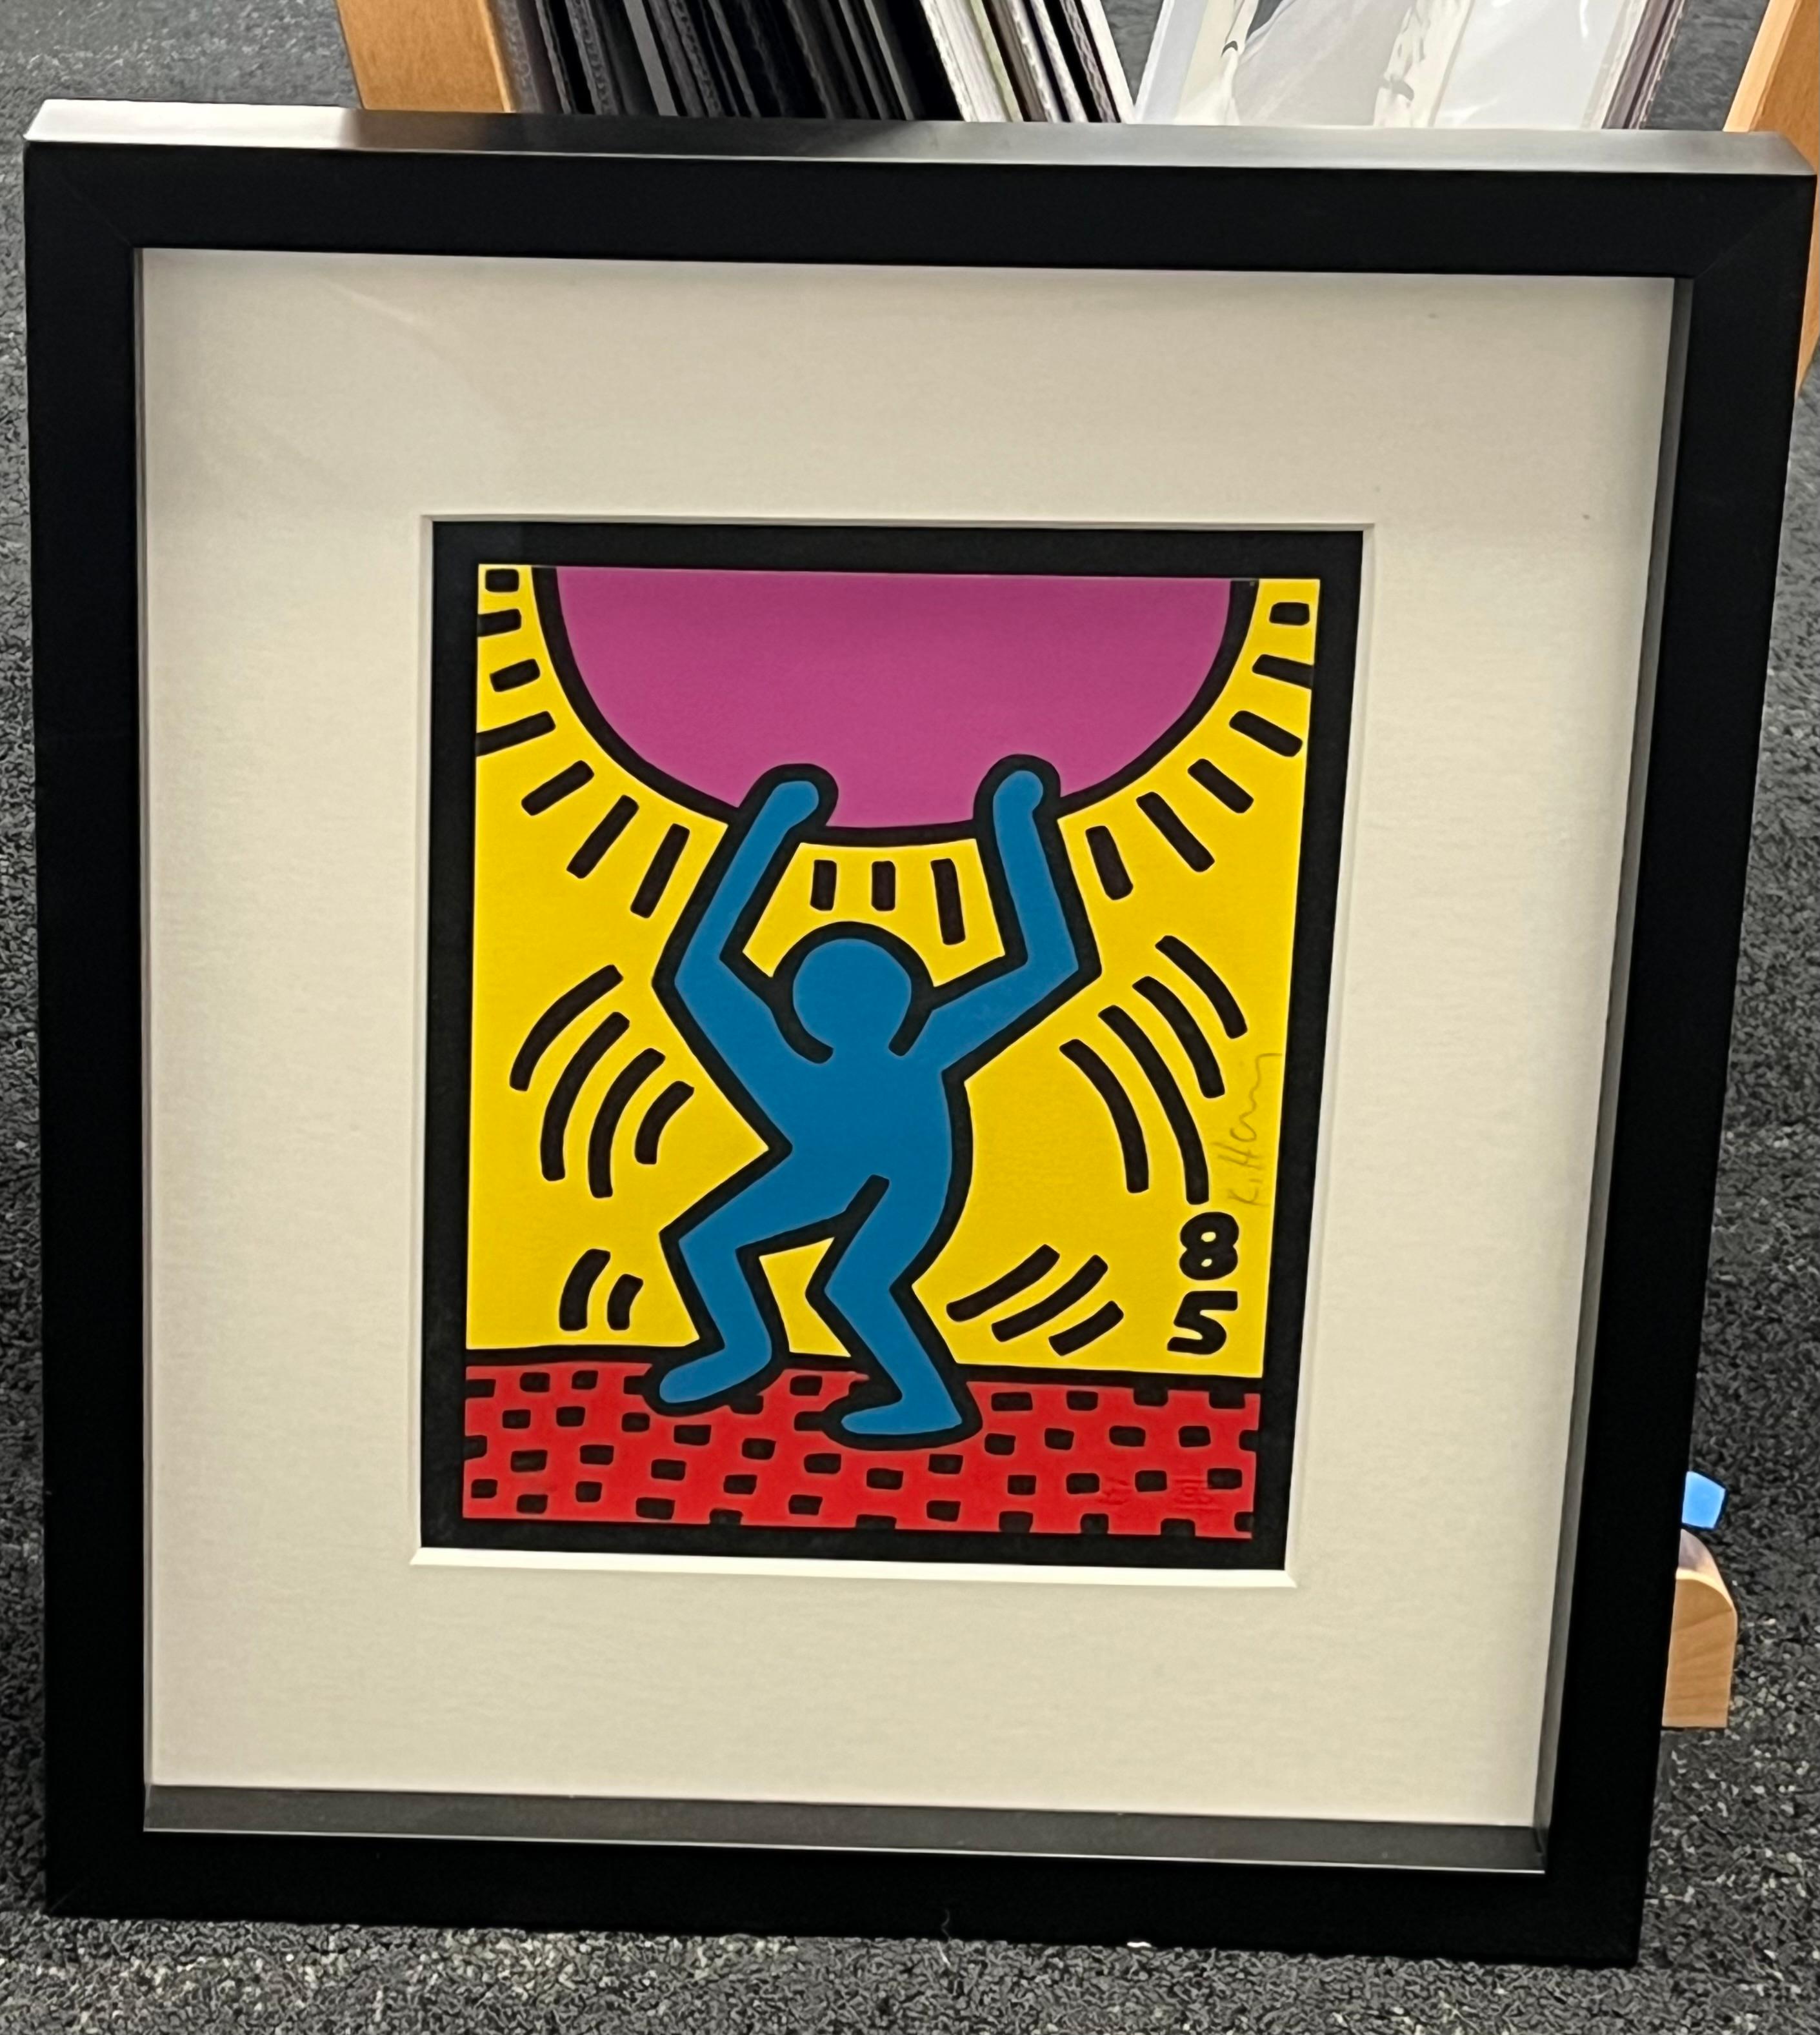 Keith Haring
Année internationale de la jeunesse 1984
Lithographie en couleurs sur papier Arches, signée au crayon et numérotée 1000, avec les cachets de l'éditeur/imprimeur The World Federation of United Nations/Emiliano Sorini Studio, New York, la